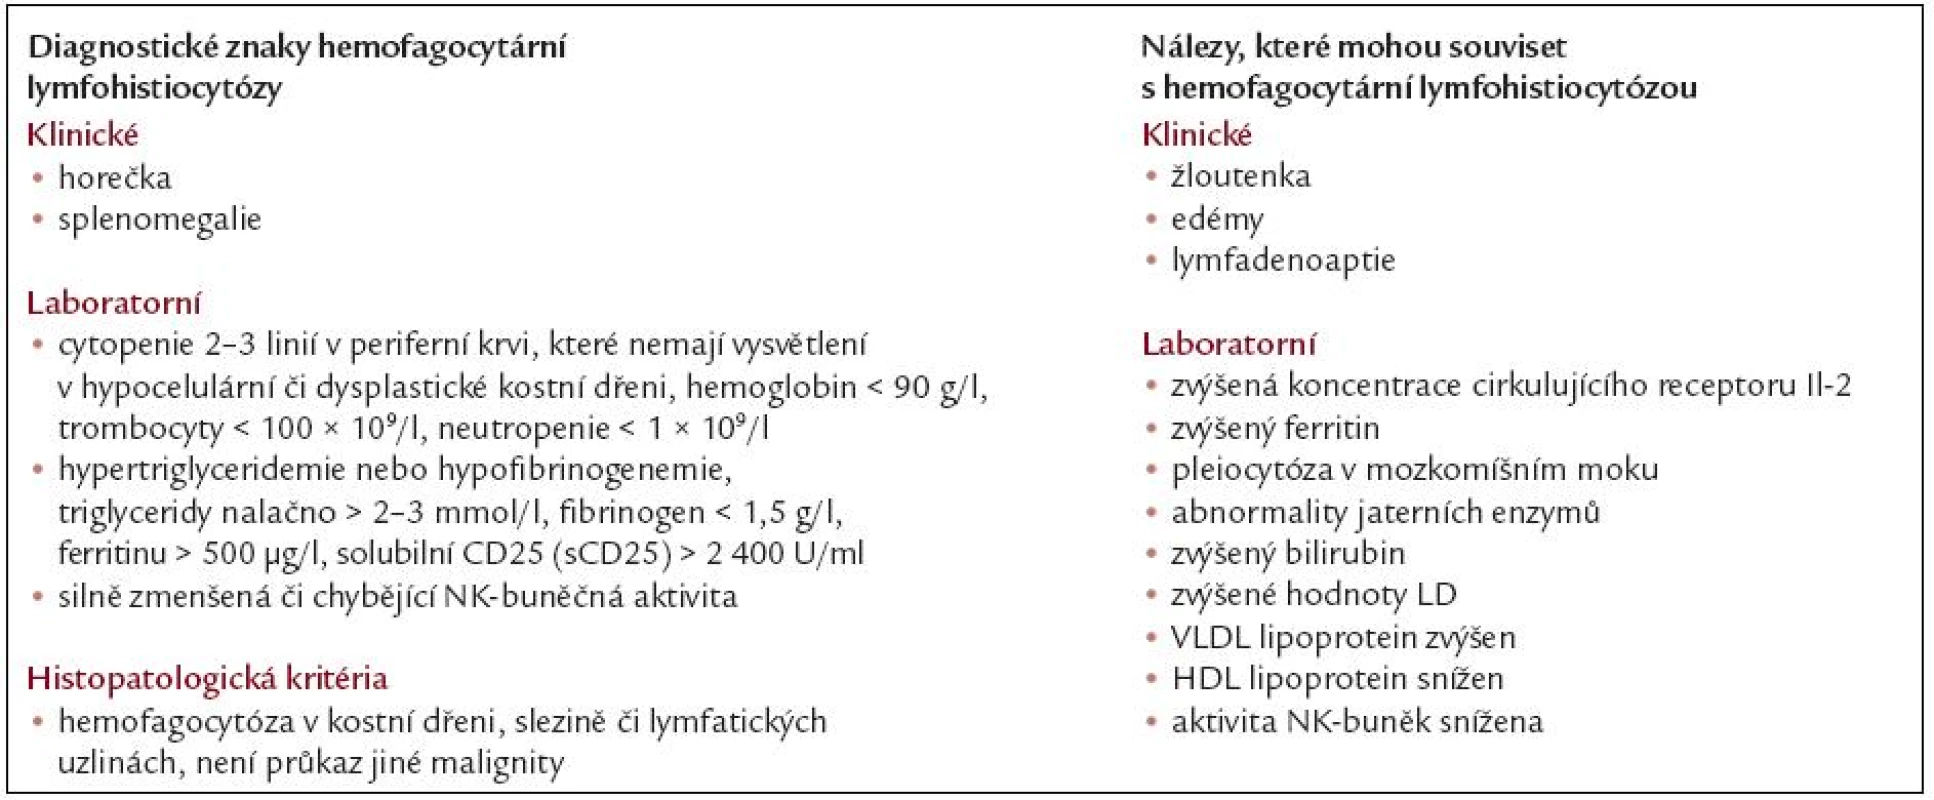 Diagnostická kritéria fagocytární lymfohistiocytózy. Podle [52].